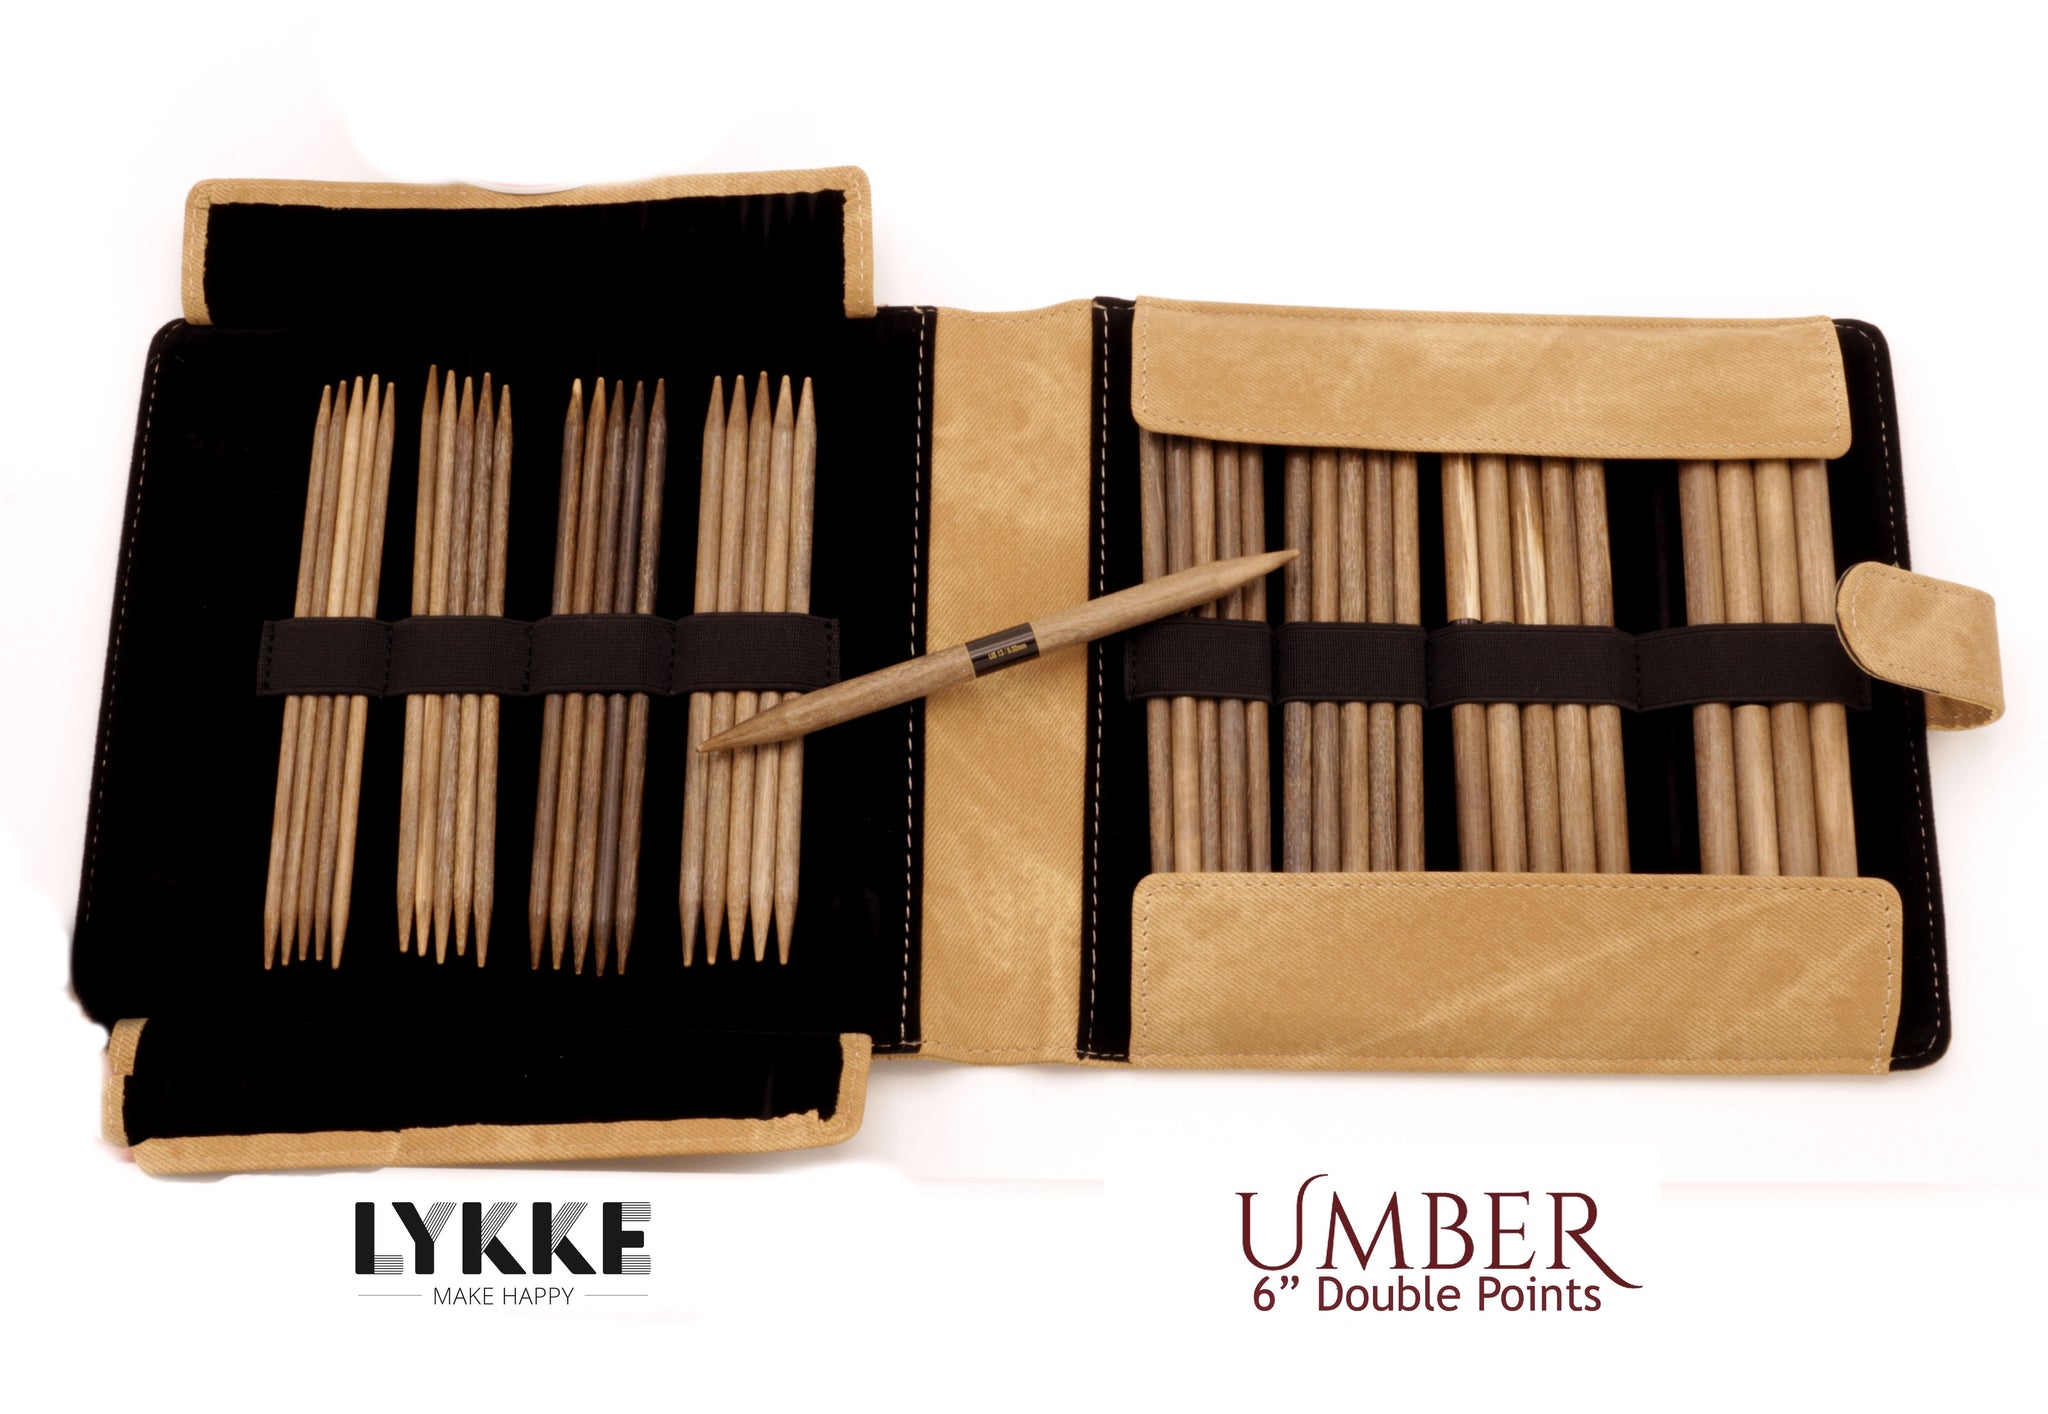  Lykke Umber 6-Inch Small Sizes DPN Double Point Knitting Needle  Set Birchwood US Sizes 0, 1, 1.5, 2, 2.5, 3, 4, & 5 Includes Umber Denim  Case Bundle with Artsiga Crafts Project Bag